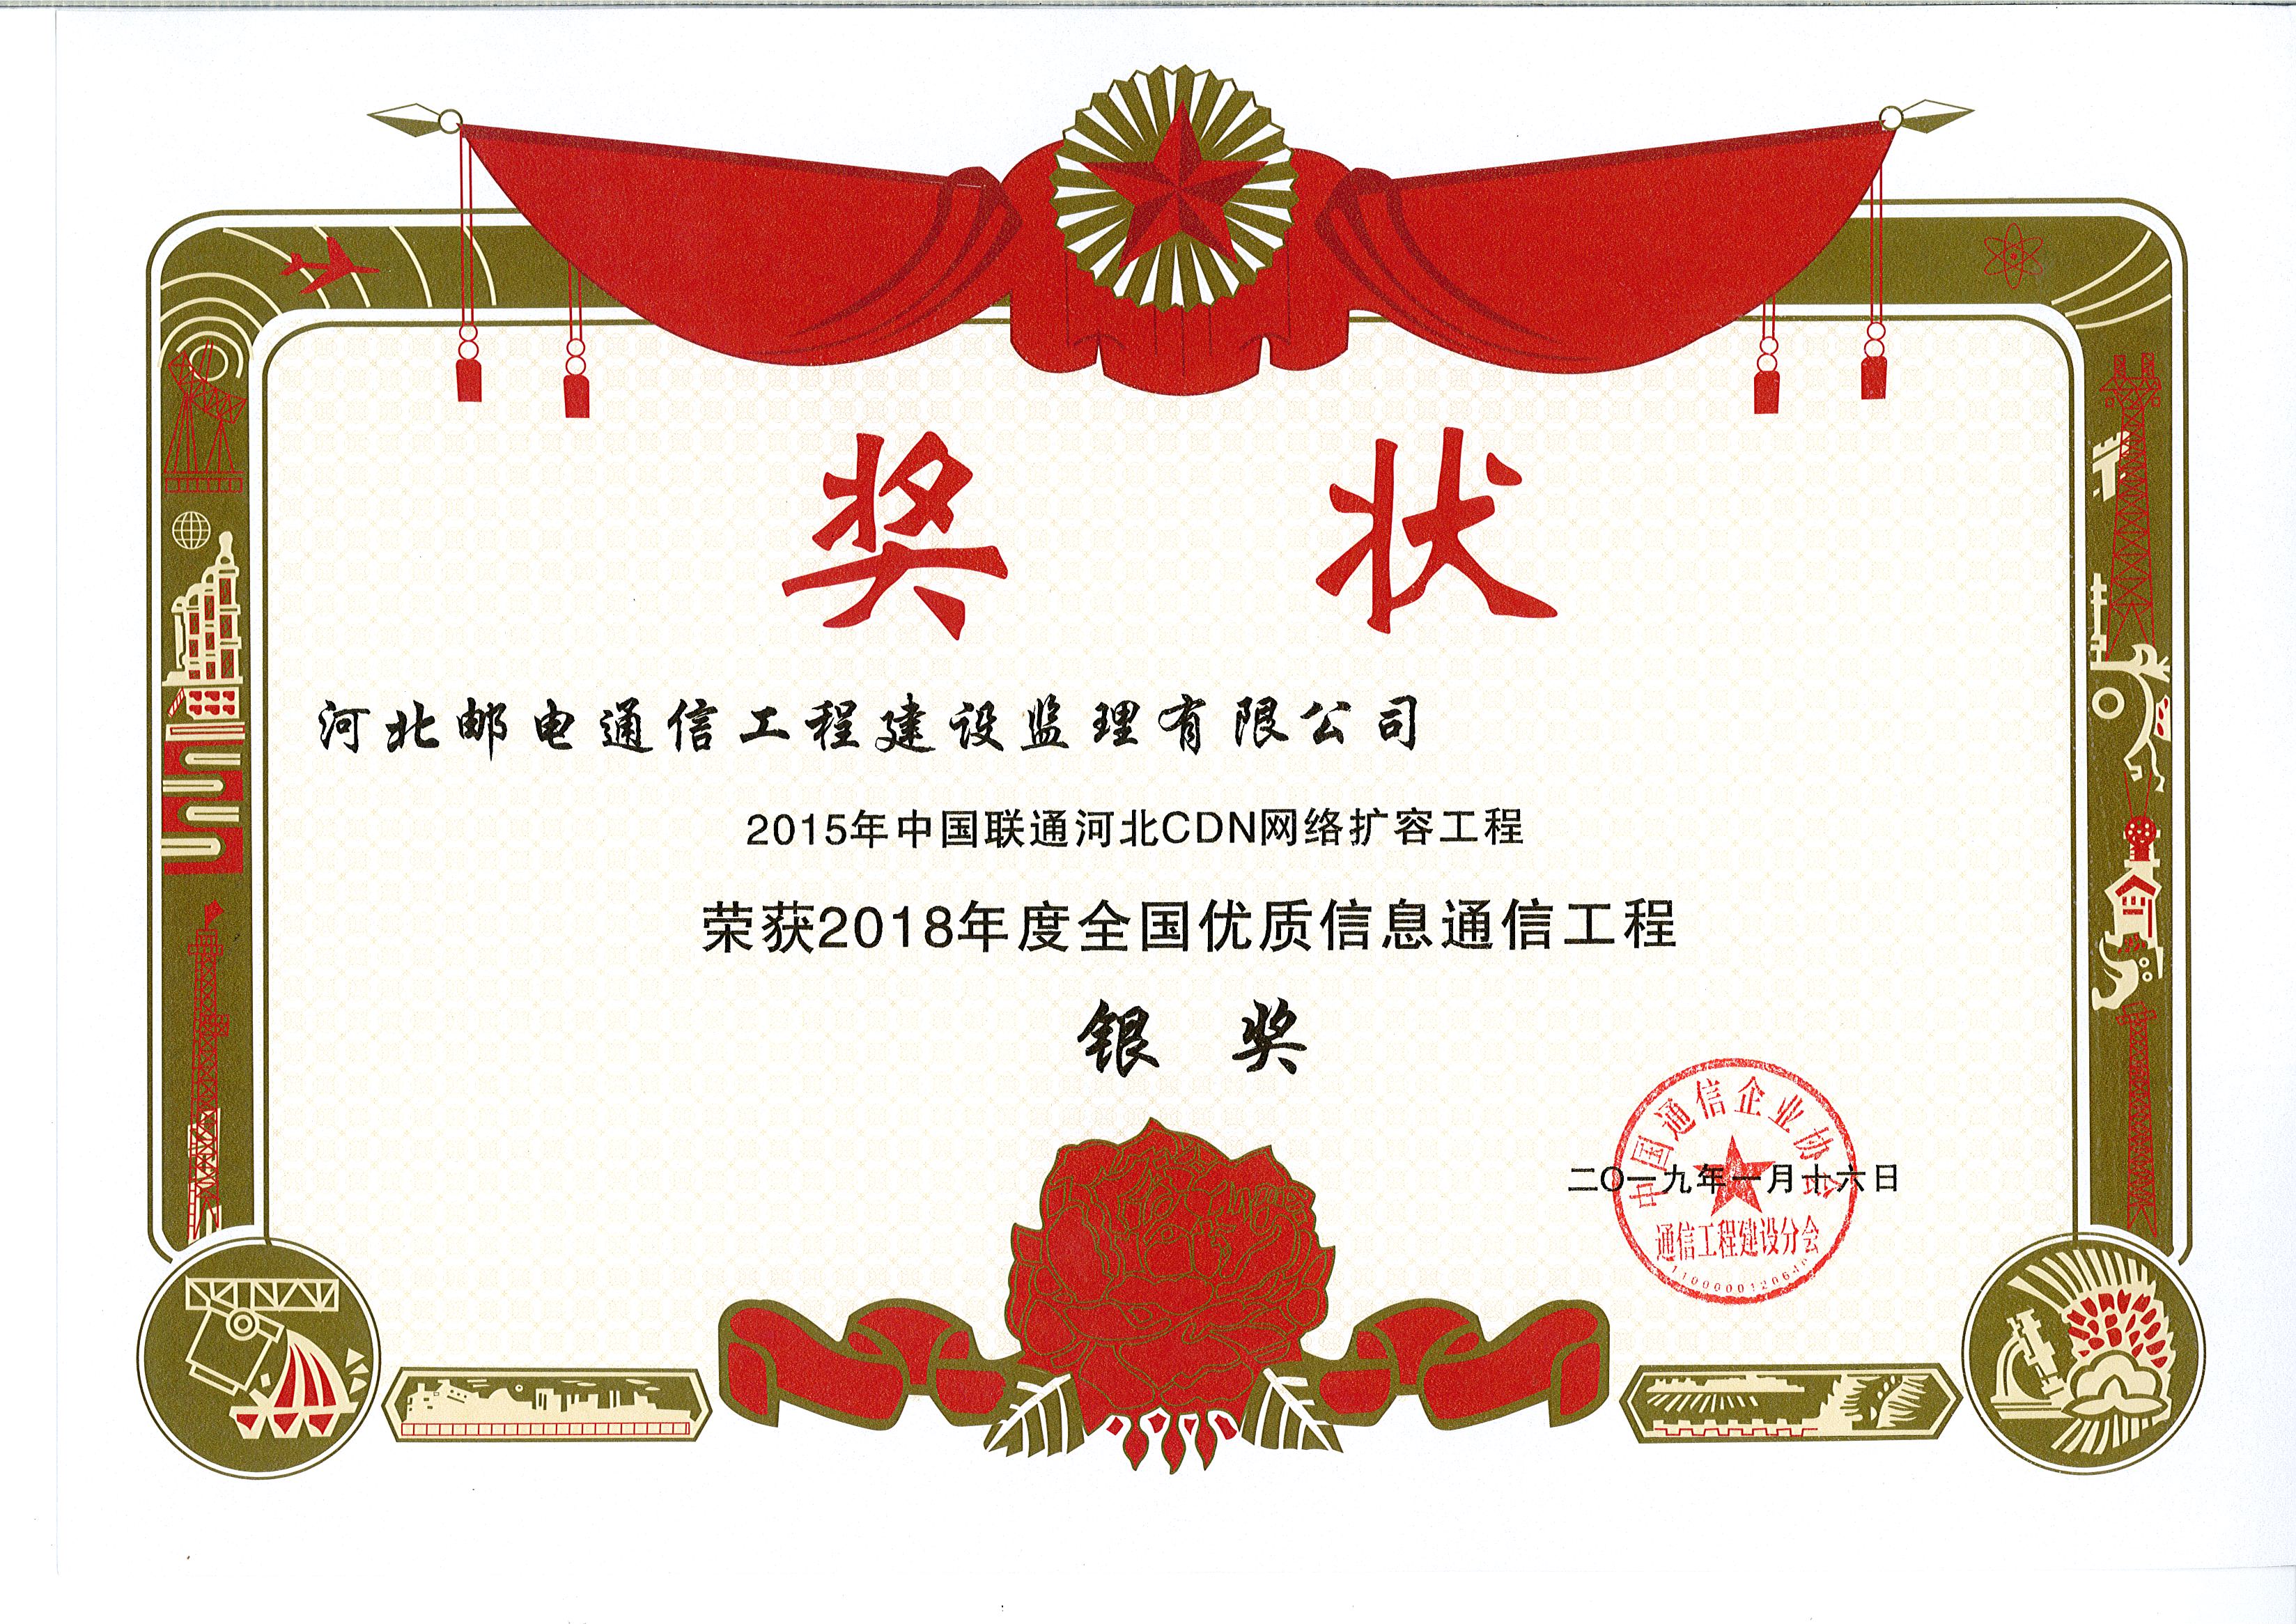 2015年中国联通河北CDN网络扩容工程